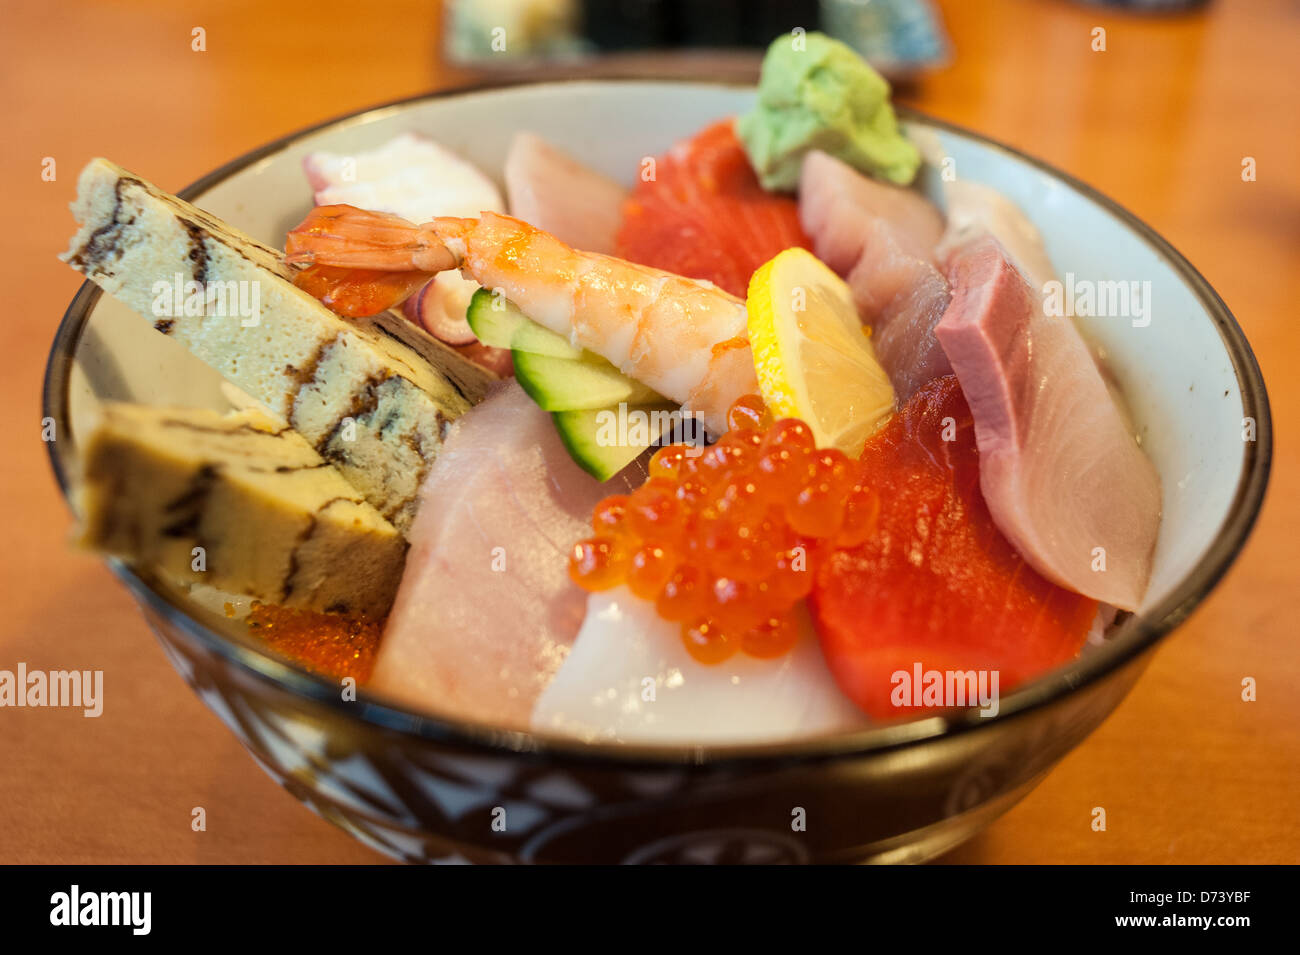 Ciotola di Chirashi Sushi con fresca selezione di tamago, salmone, tonno, pesce roe, Saba, wasabi, polpo su un letto di riso sushi. Foto Stock